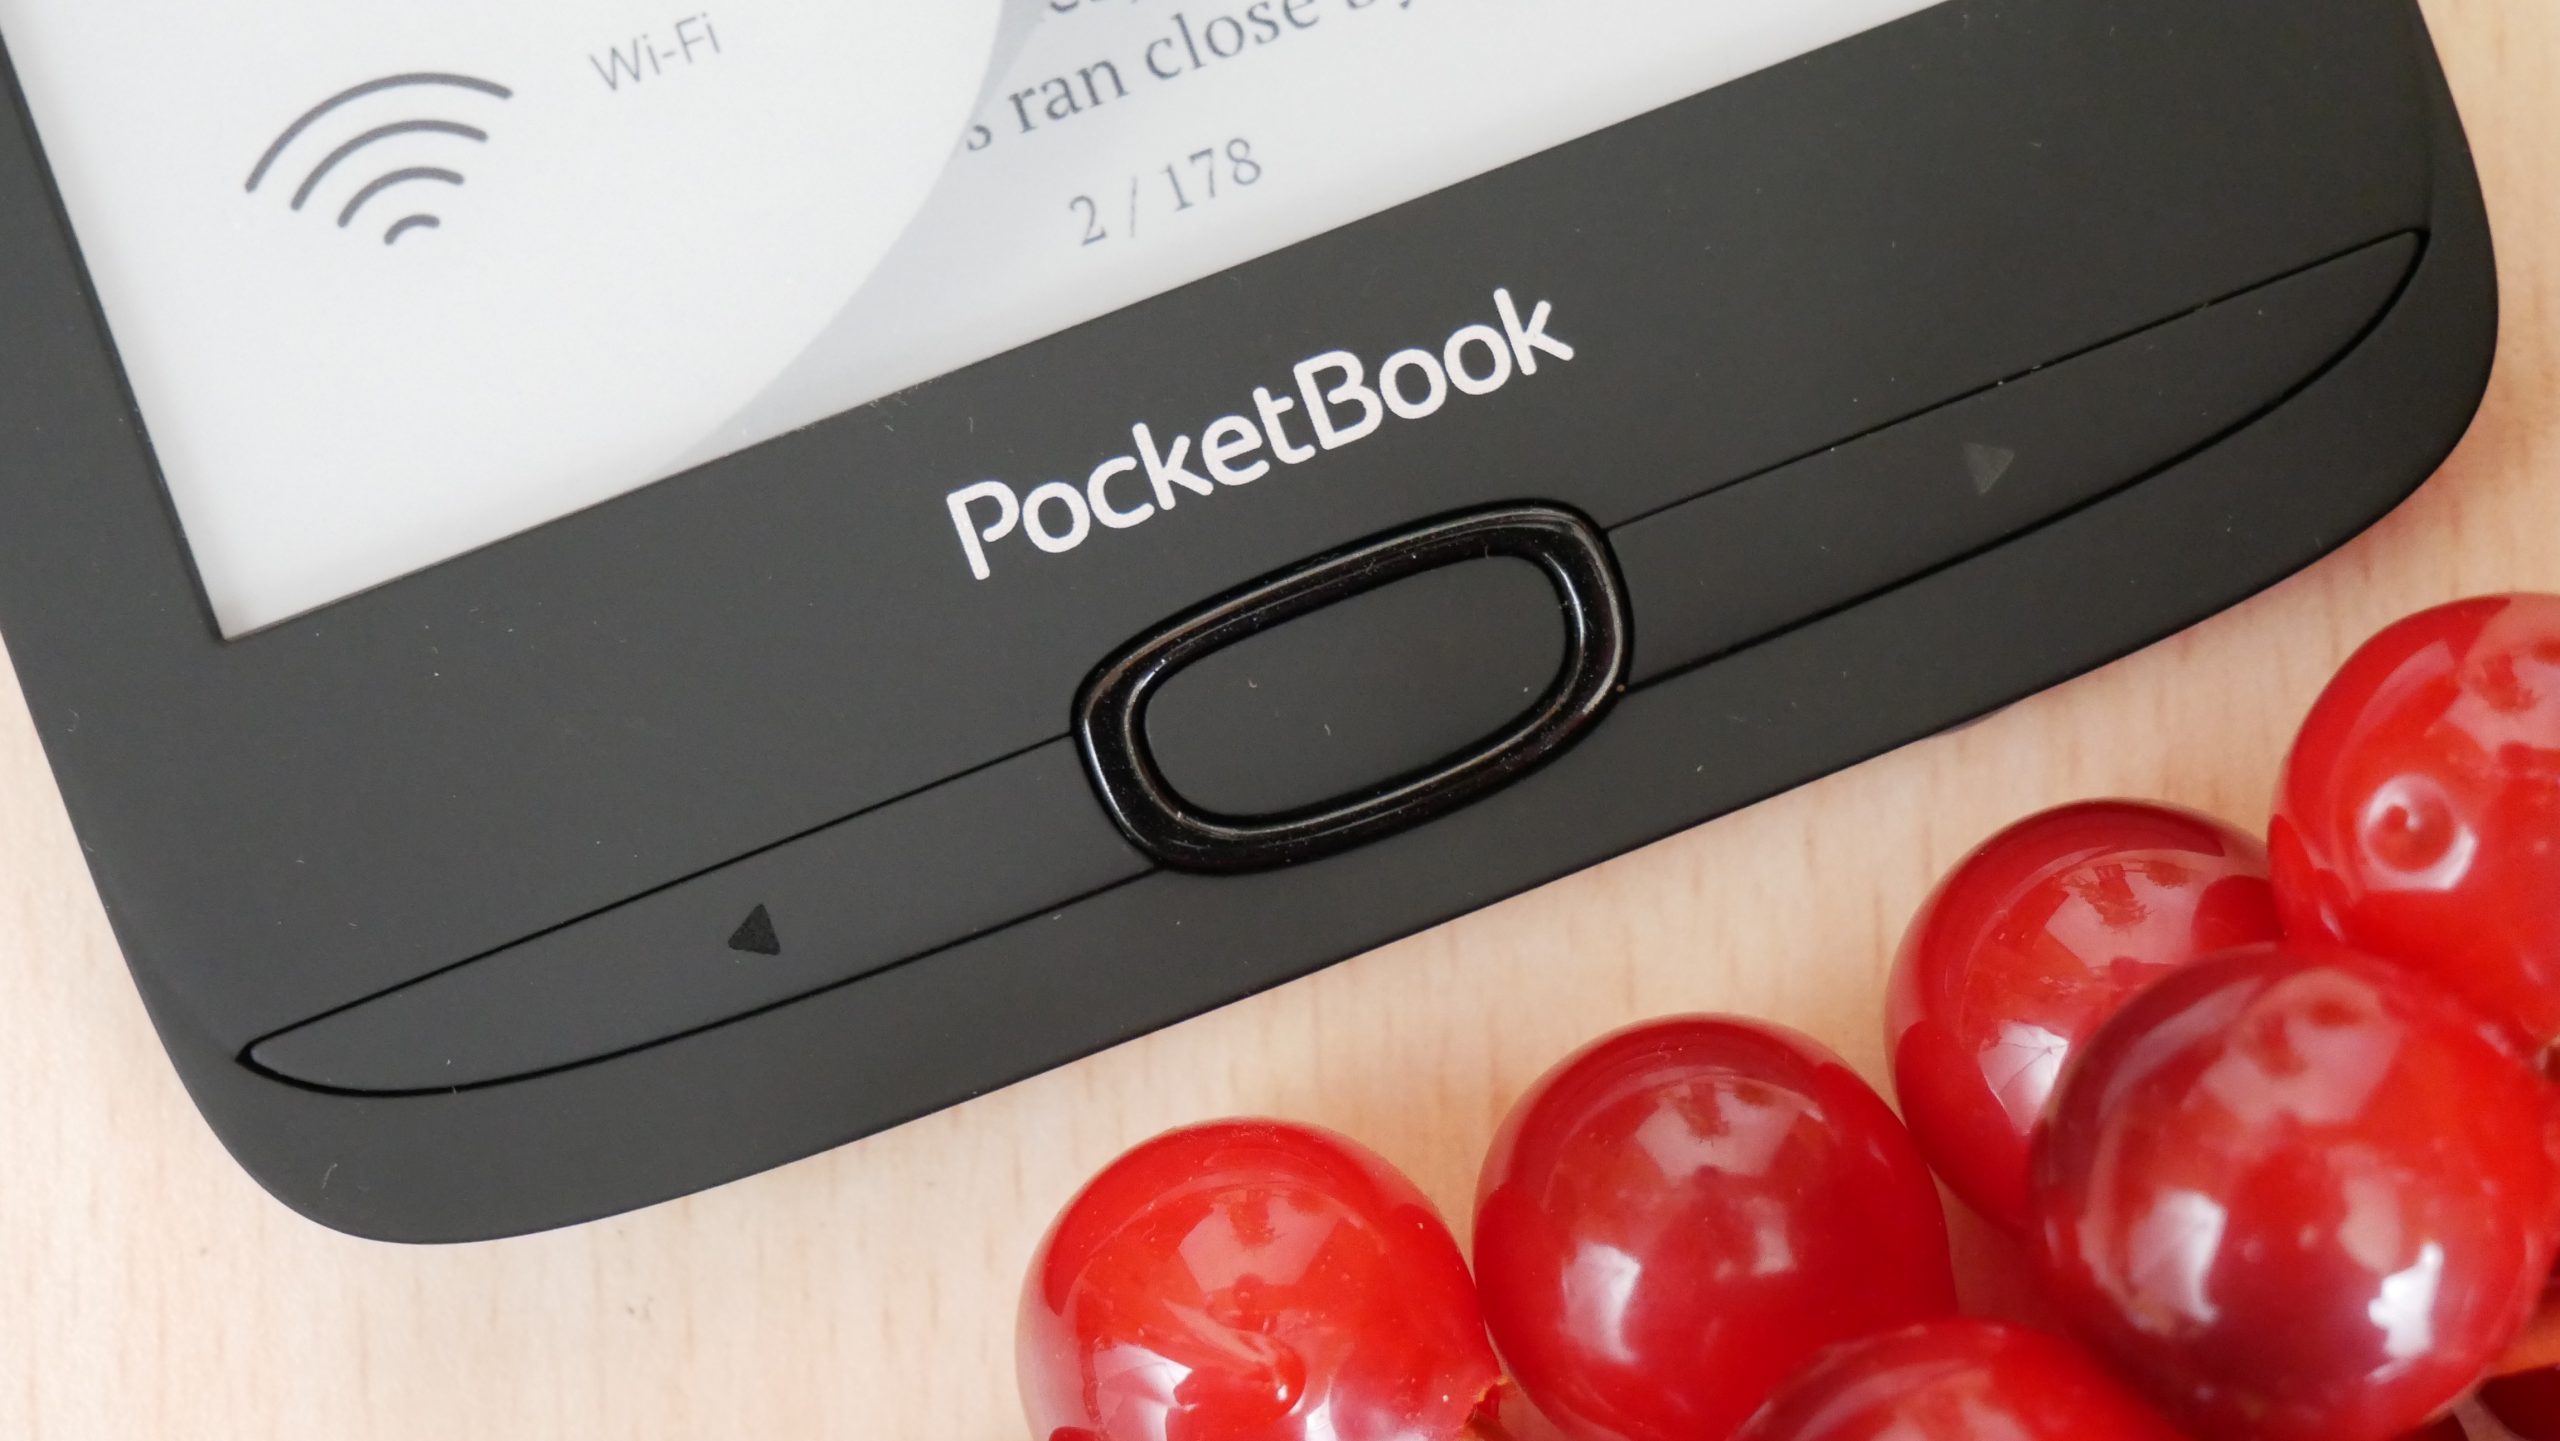 PocketBook E-book leitor básico lux 3 brilho-livre e tinta carta